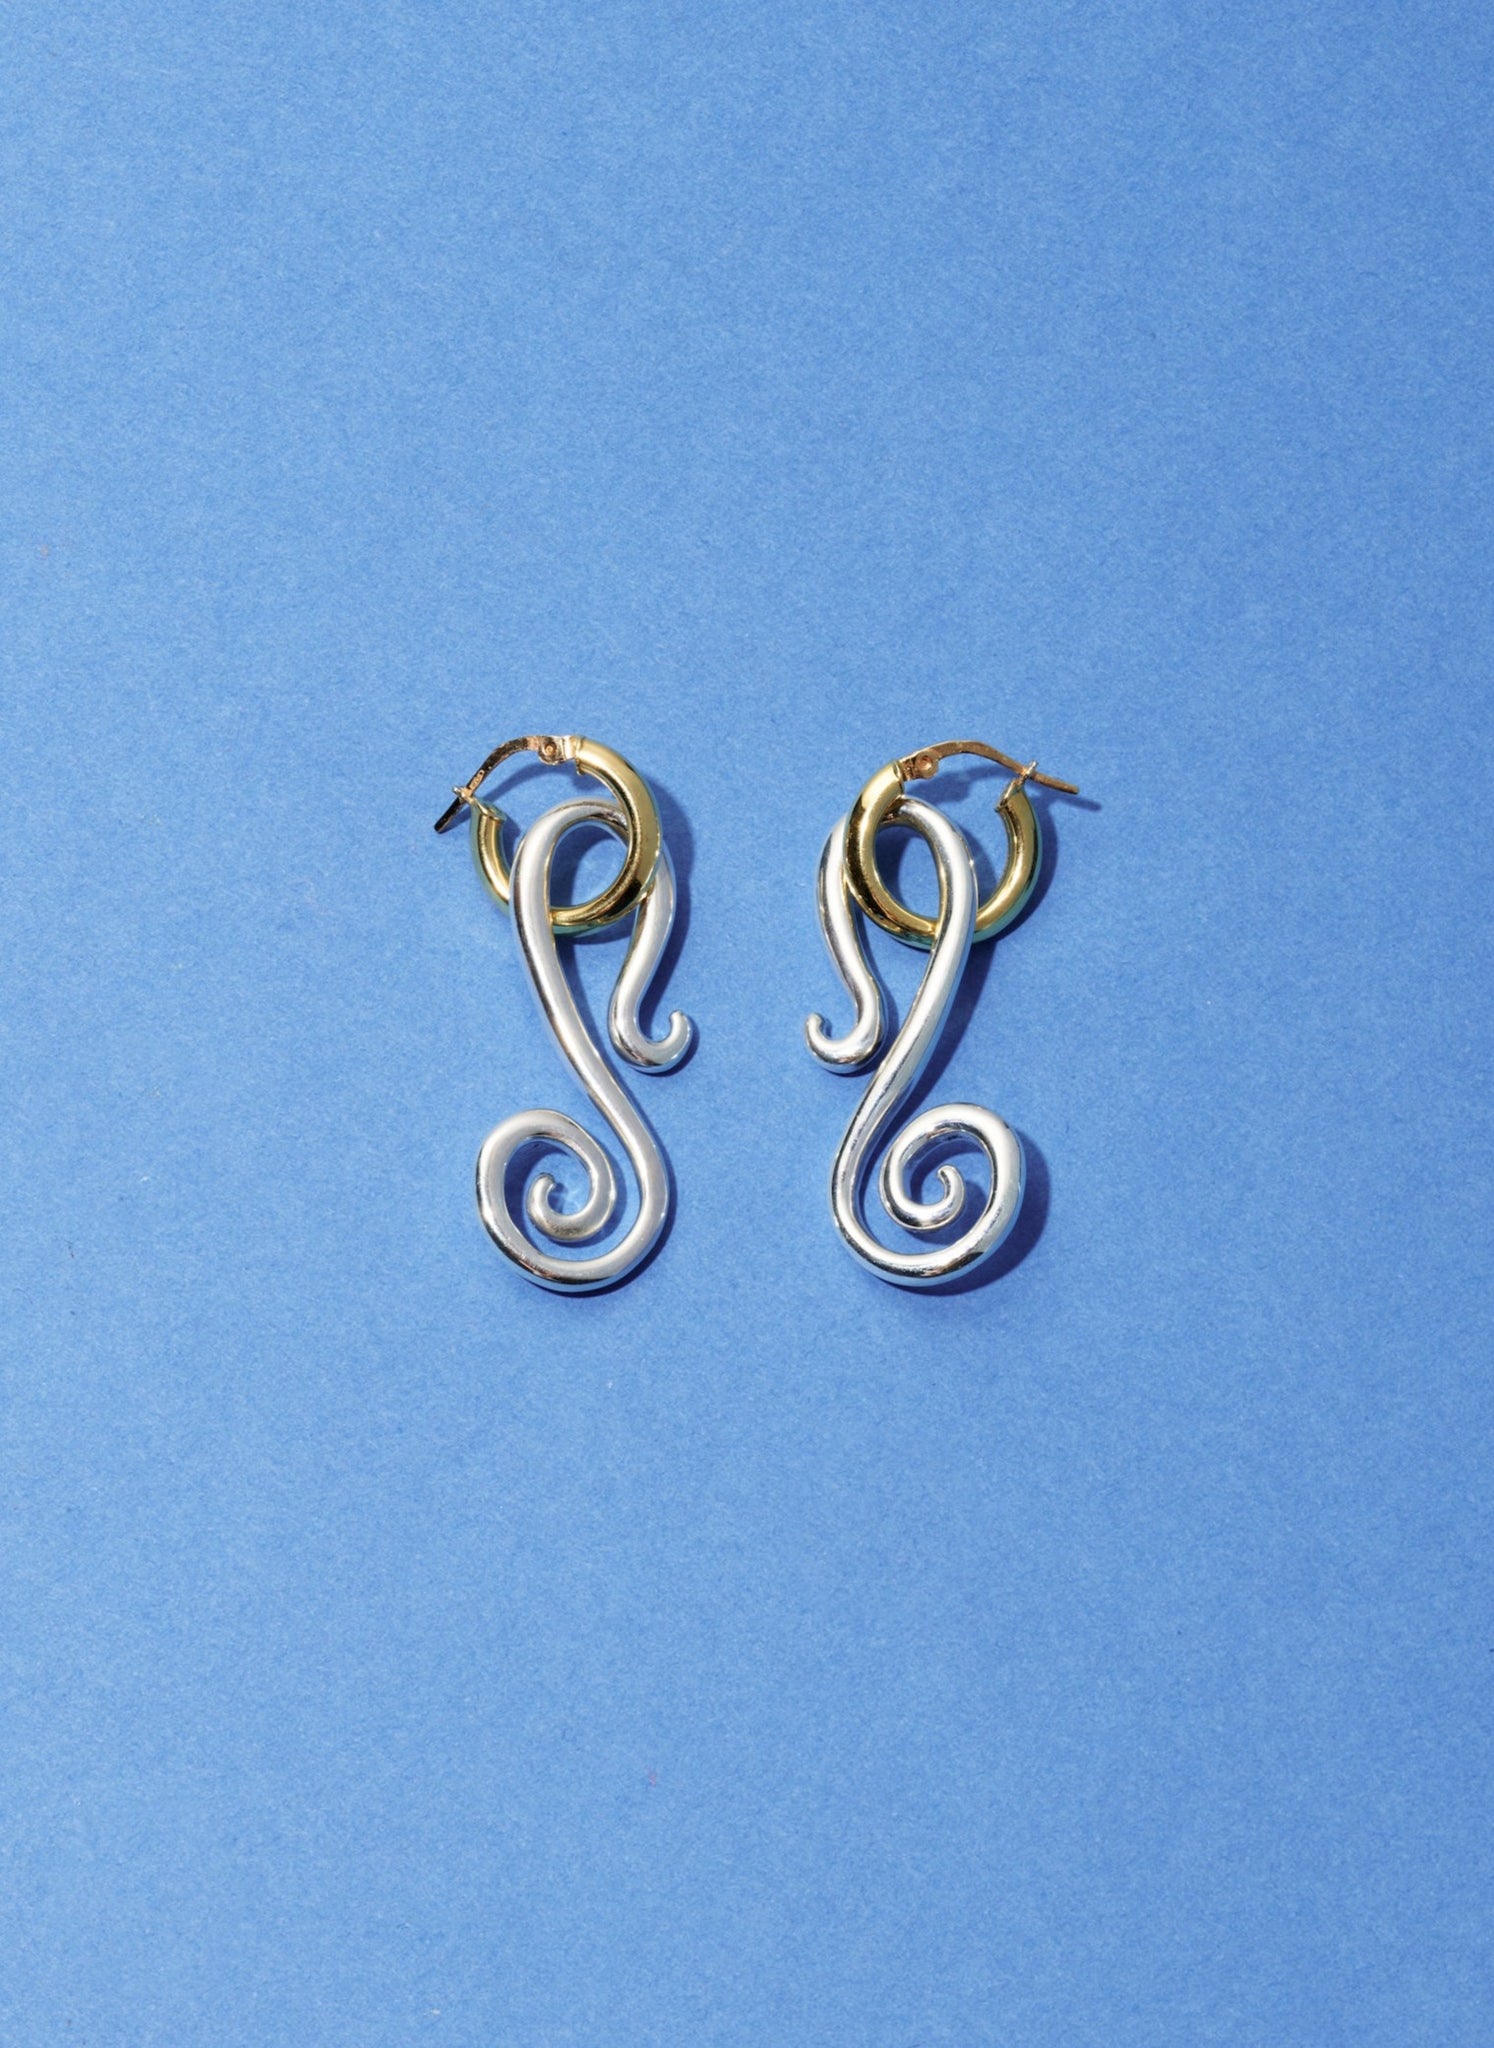 Spiral Jetty earrings